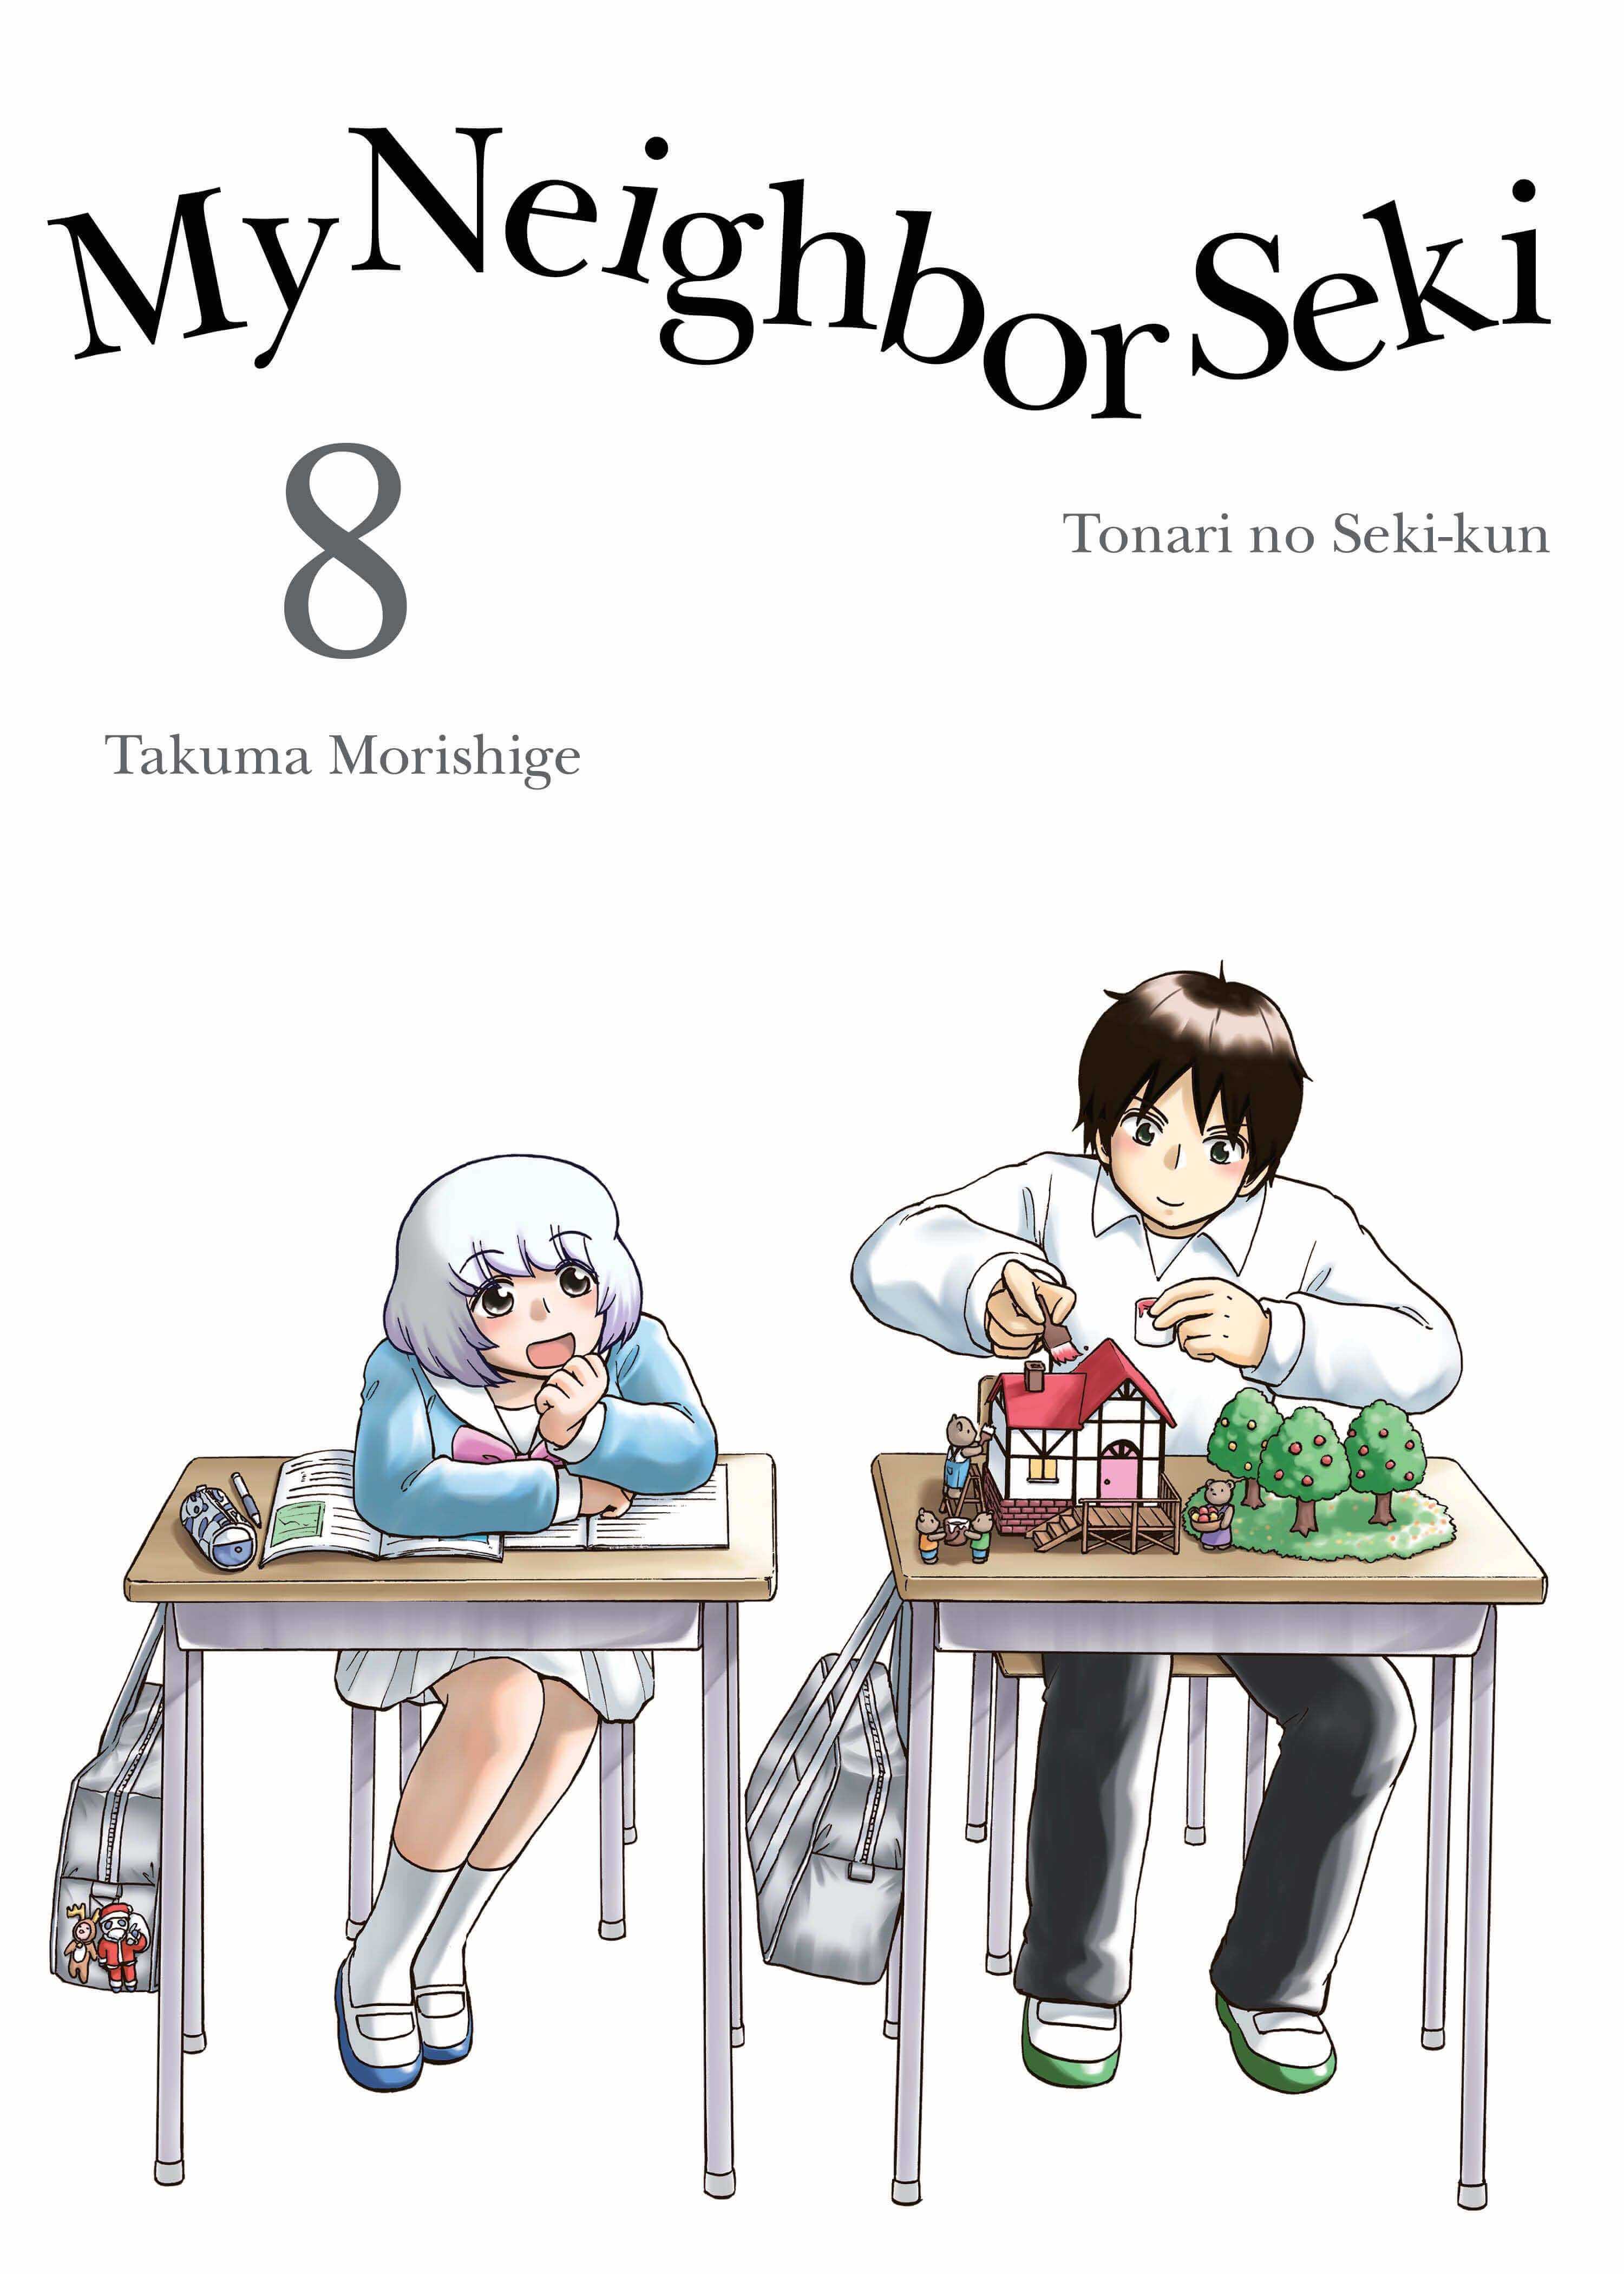 October 2016 Manga Releases Cover for My Neighbor Seki.